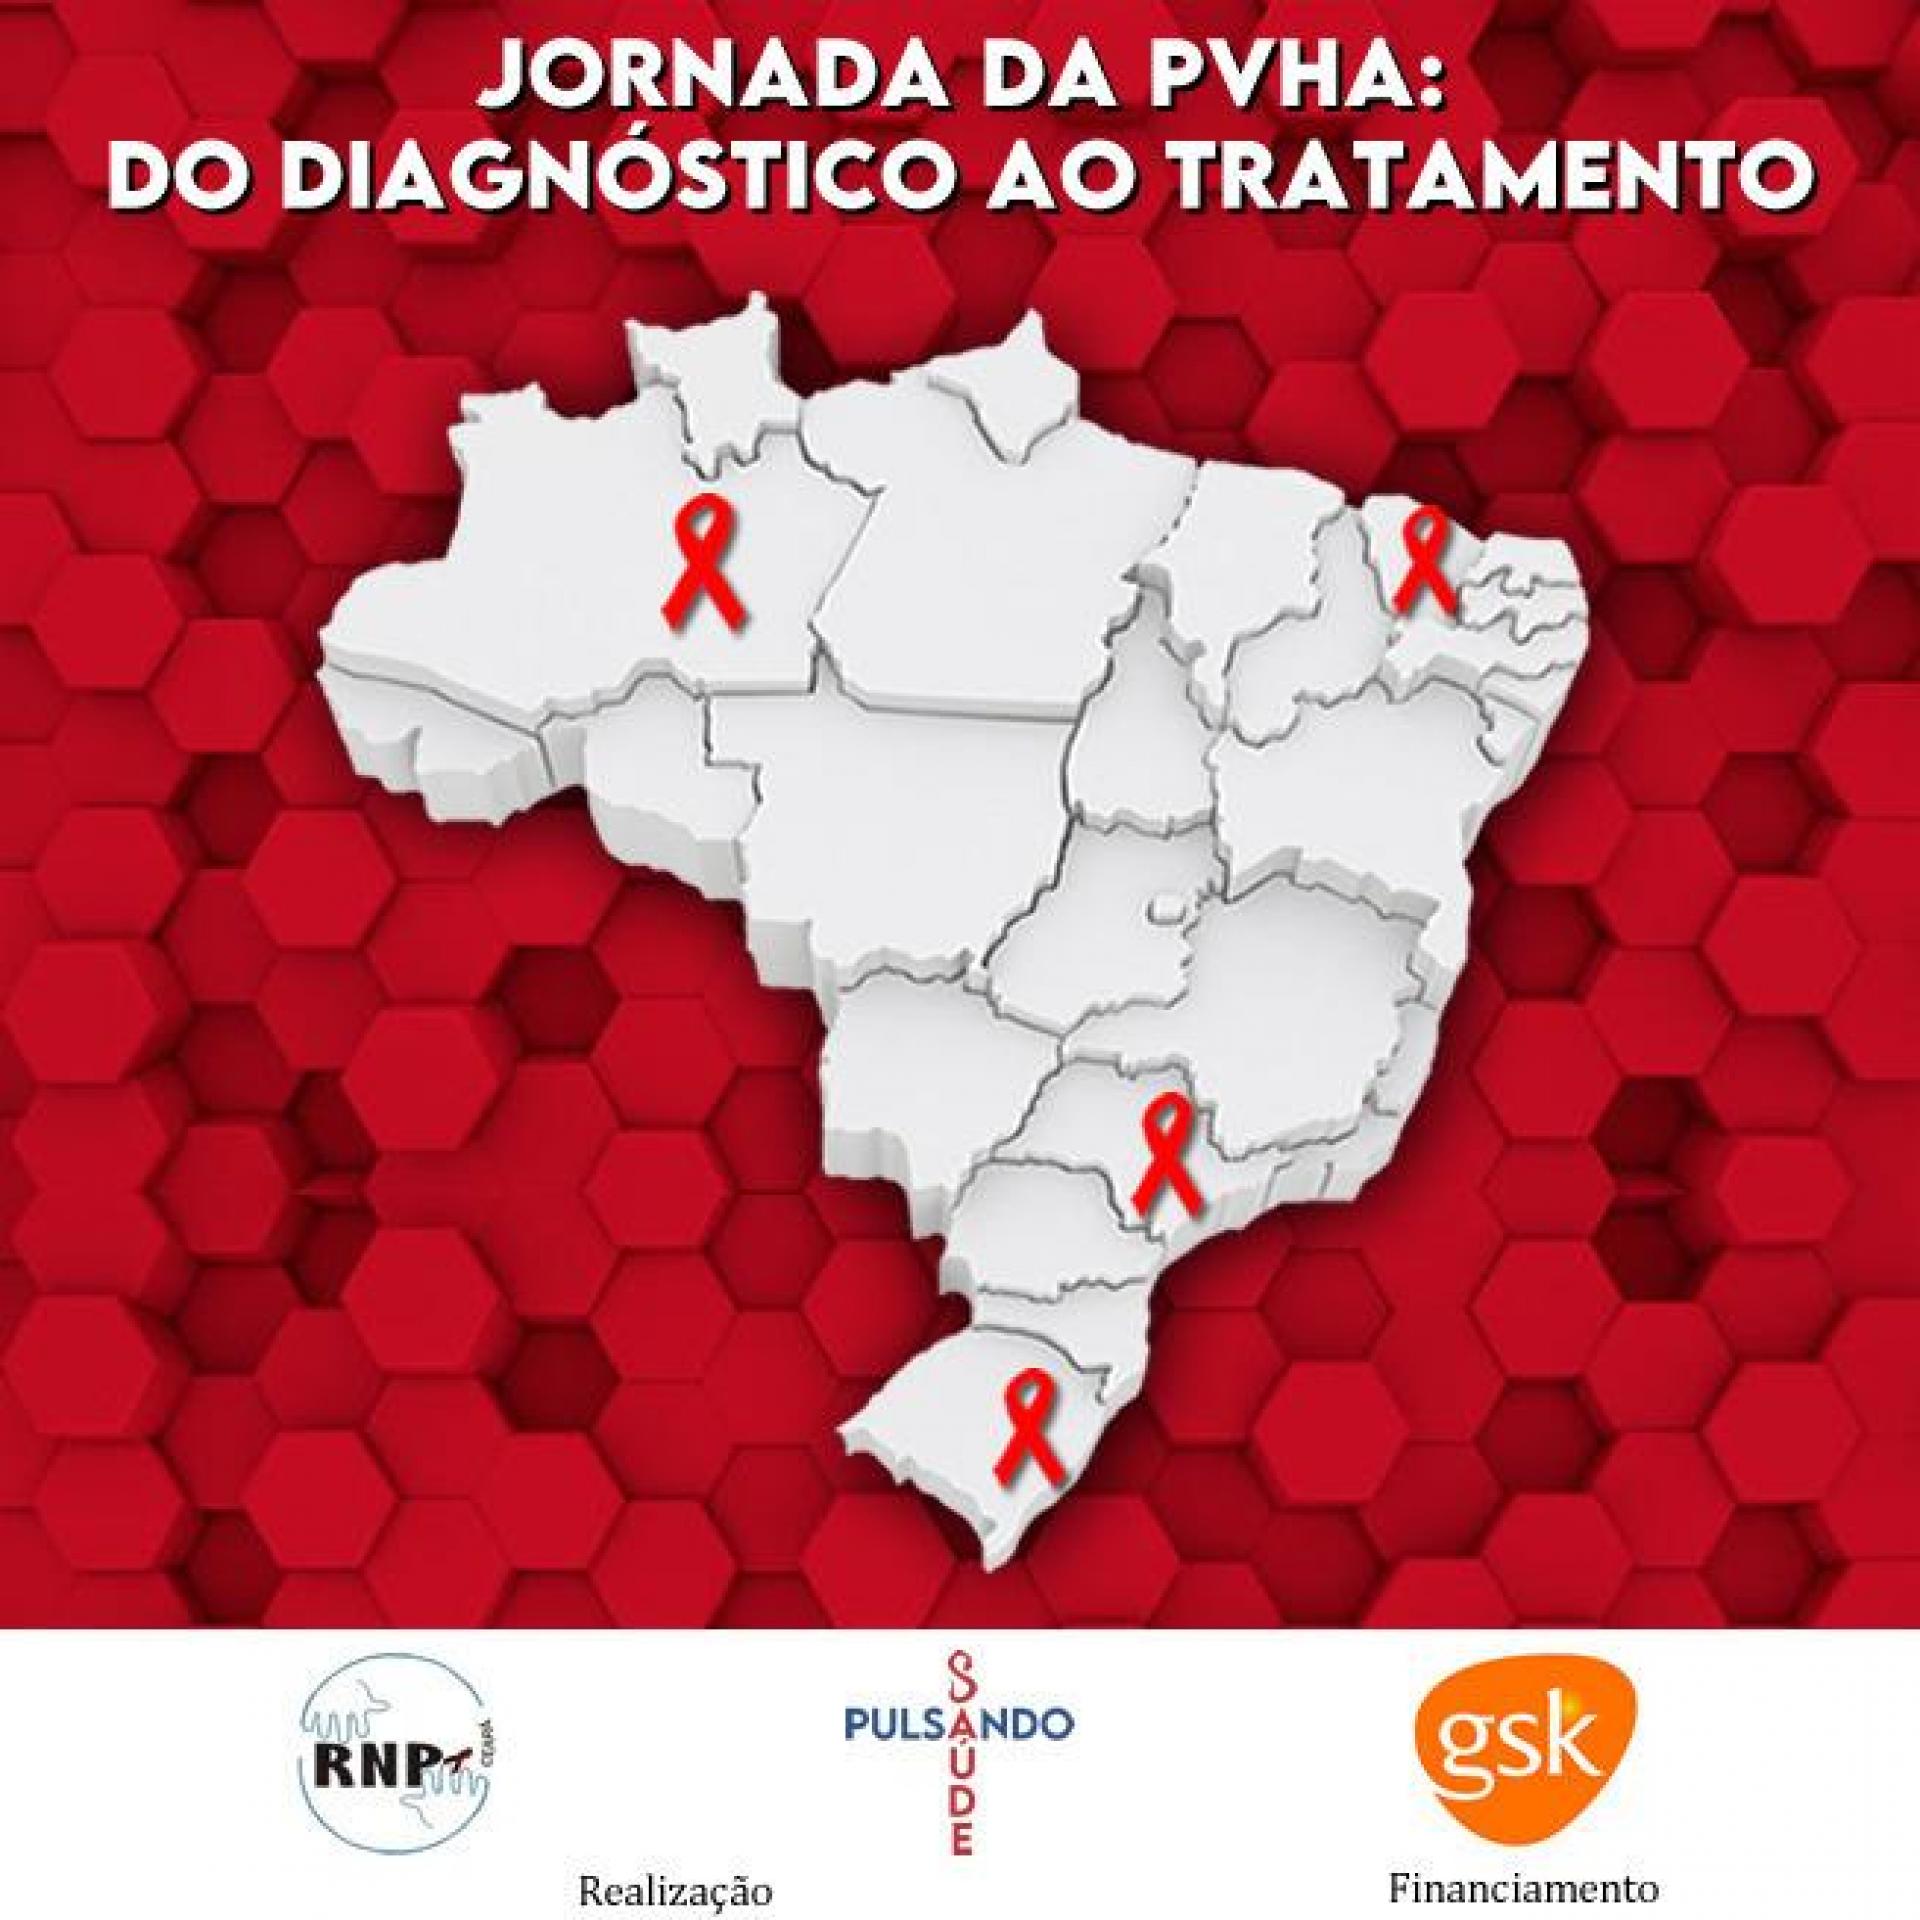 Trajetória do diagnóstico ao tratamento da pessoa com HIV é mapeada em 4 capitais